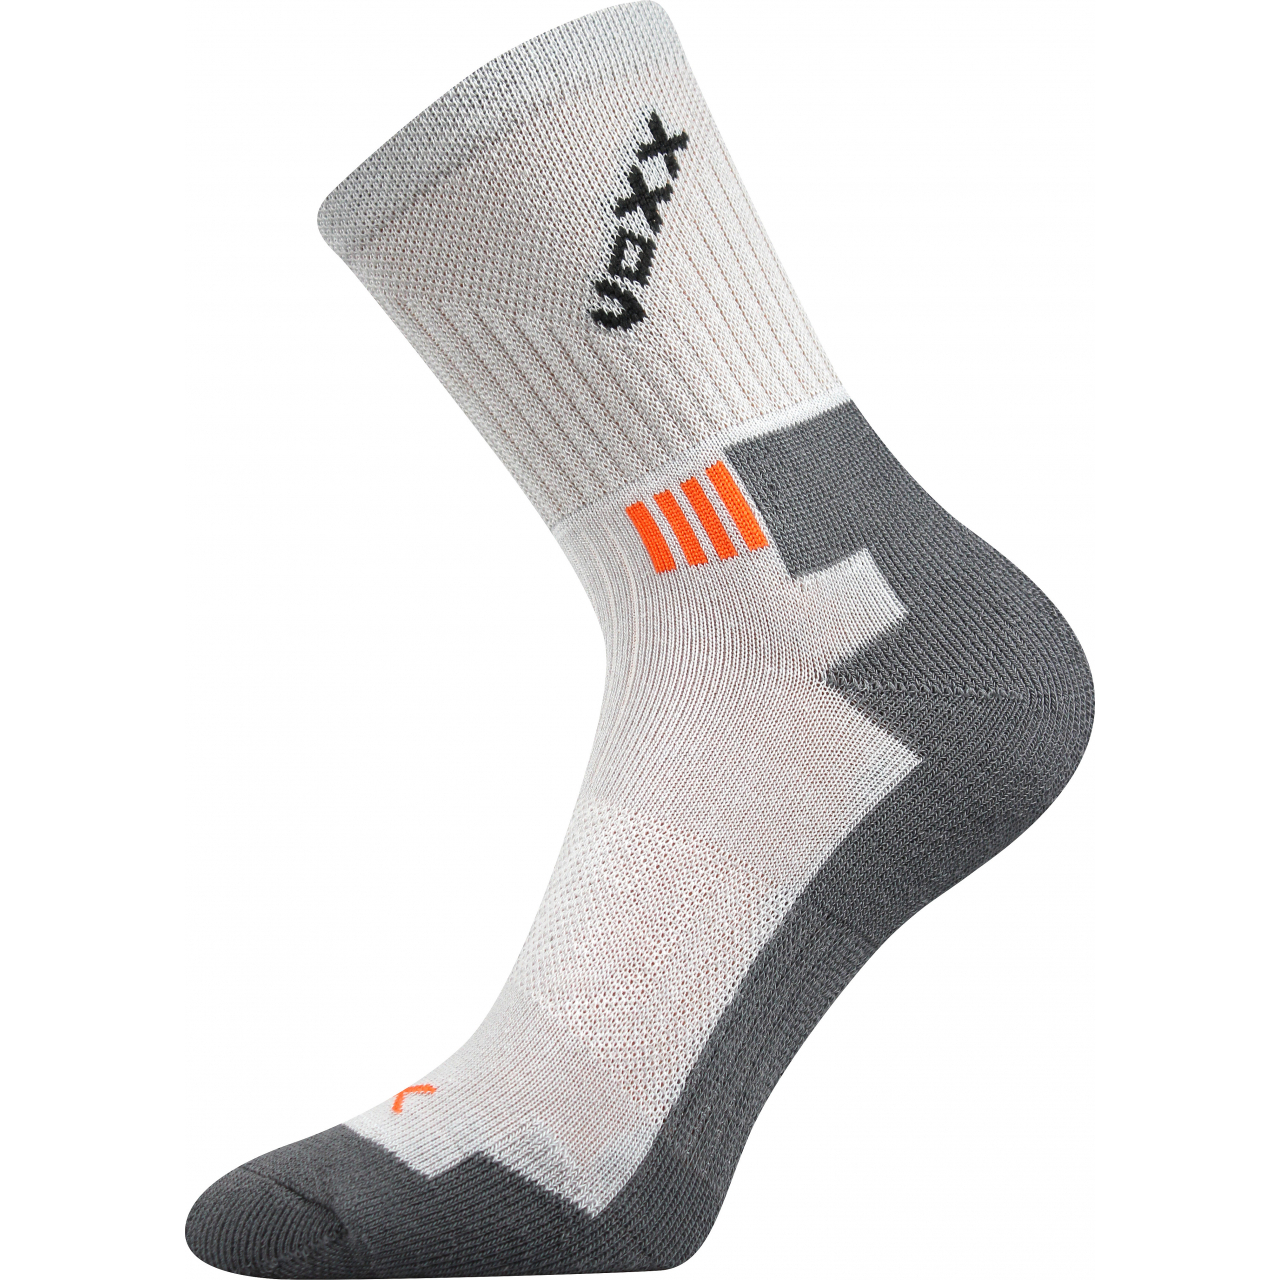 Ponožky sportovní Voxx Marián - světle šedé-šedé, 43-46